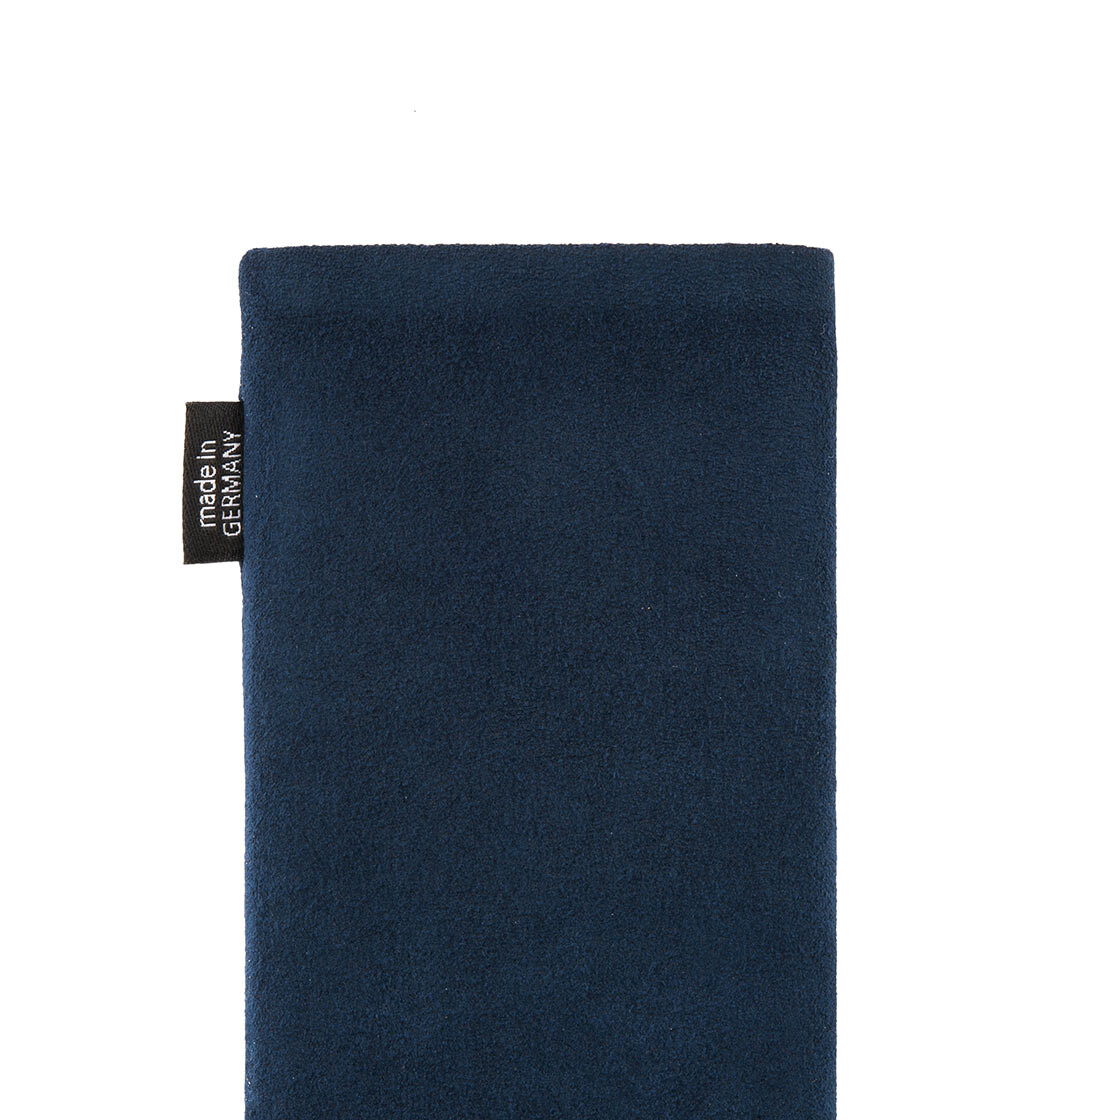 Hülle mit Reinigungsfunktion fitBAG Classic Blau Handytasche Tasche aus original Alcantara mit Microfaserinnenfutter für Samsung Galaxy Note 9 Made in Germany 